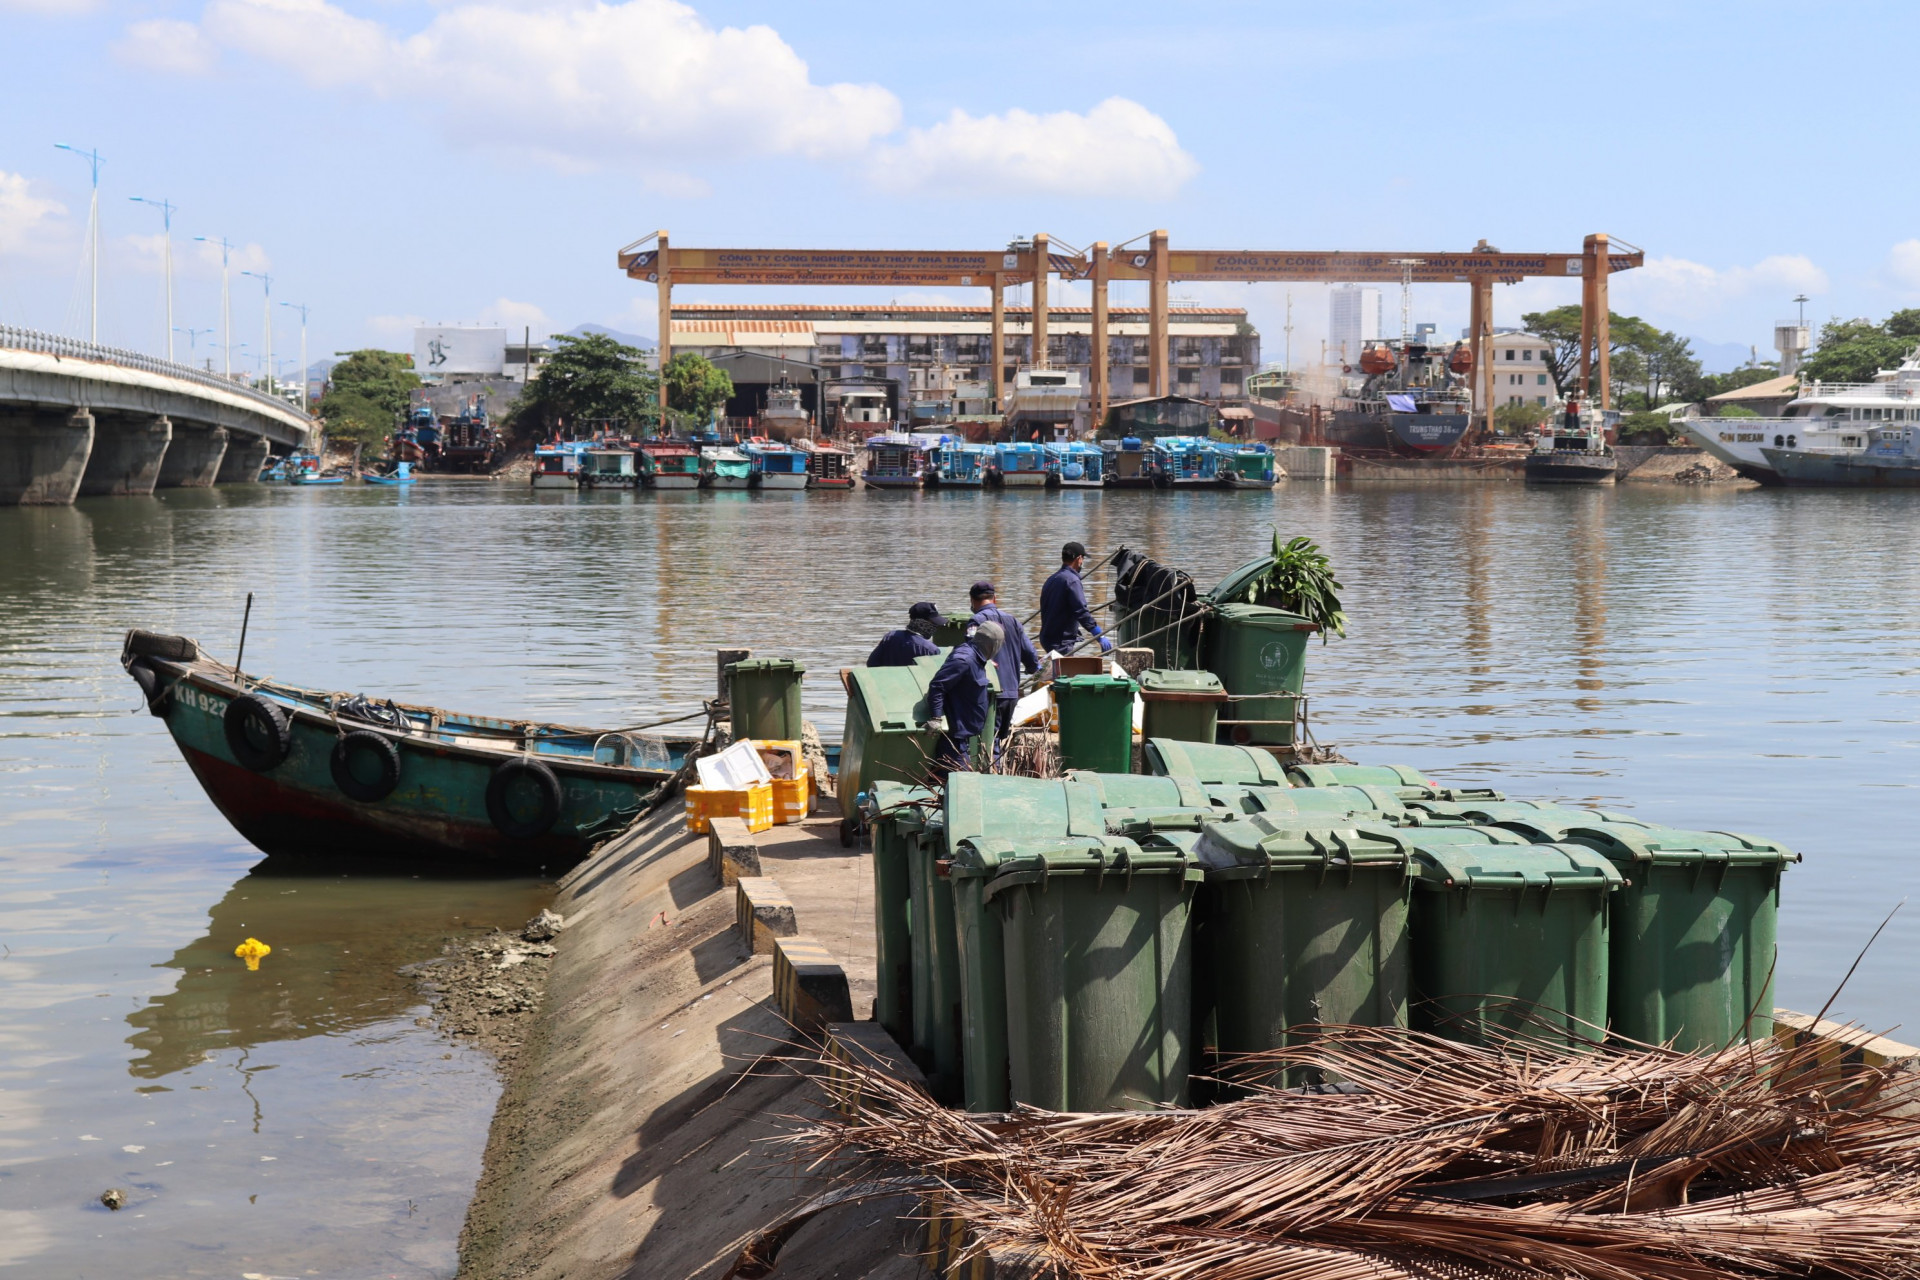 Vận chuyển các thùng rác từ thuyền lên đất liền ở chân cầu Bình Tân.